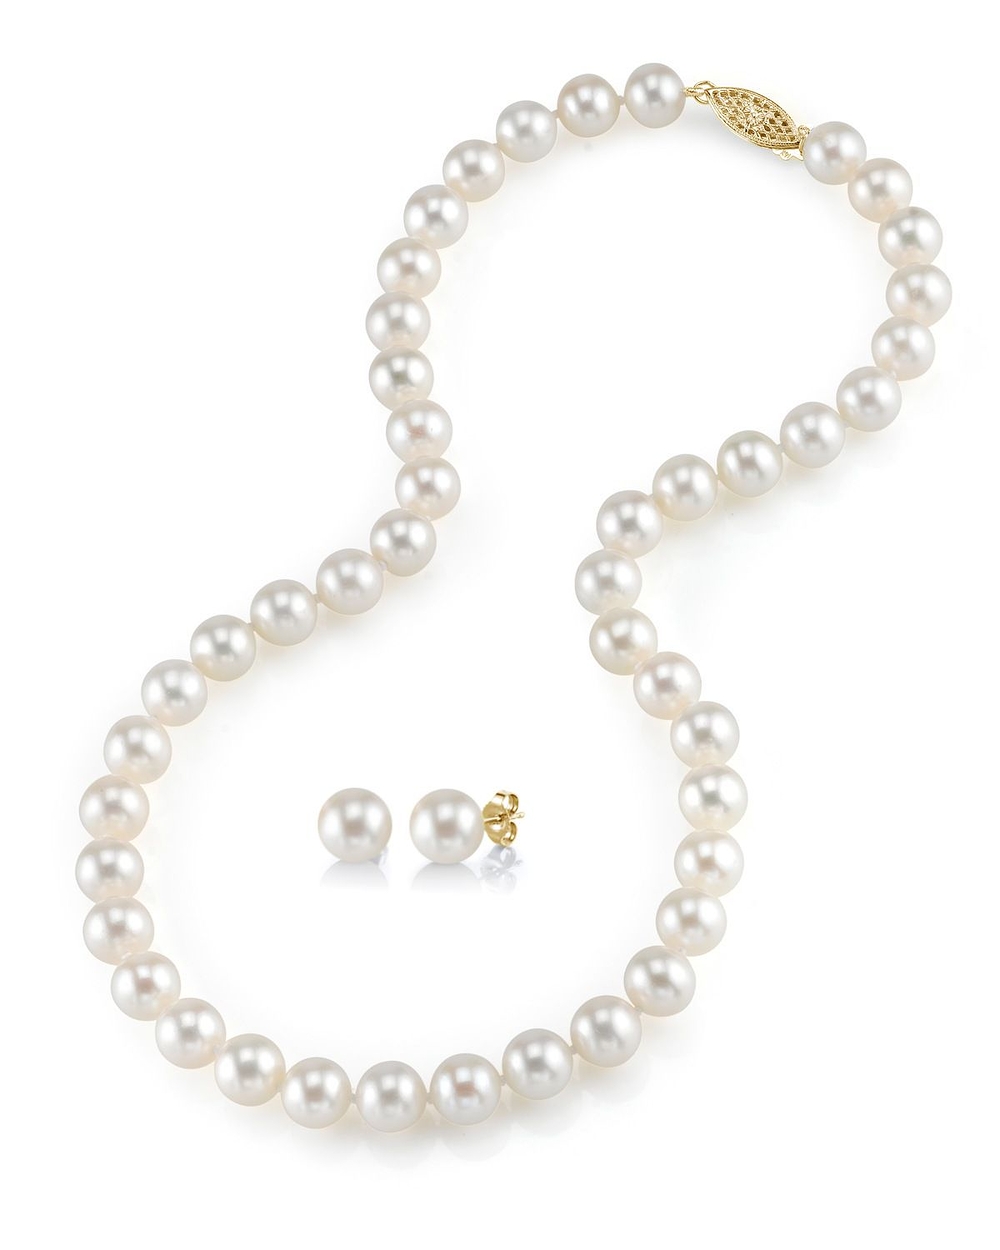 7-8mm freshwater pearl necklace u0026 earrings ZESLDWA